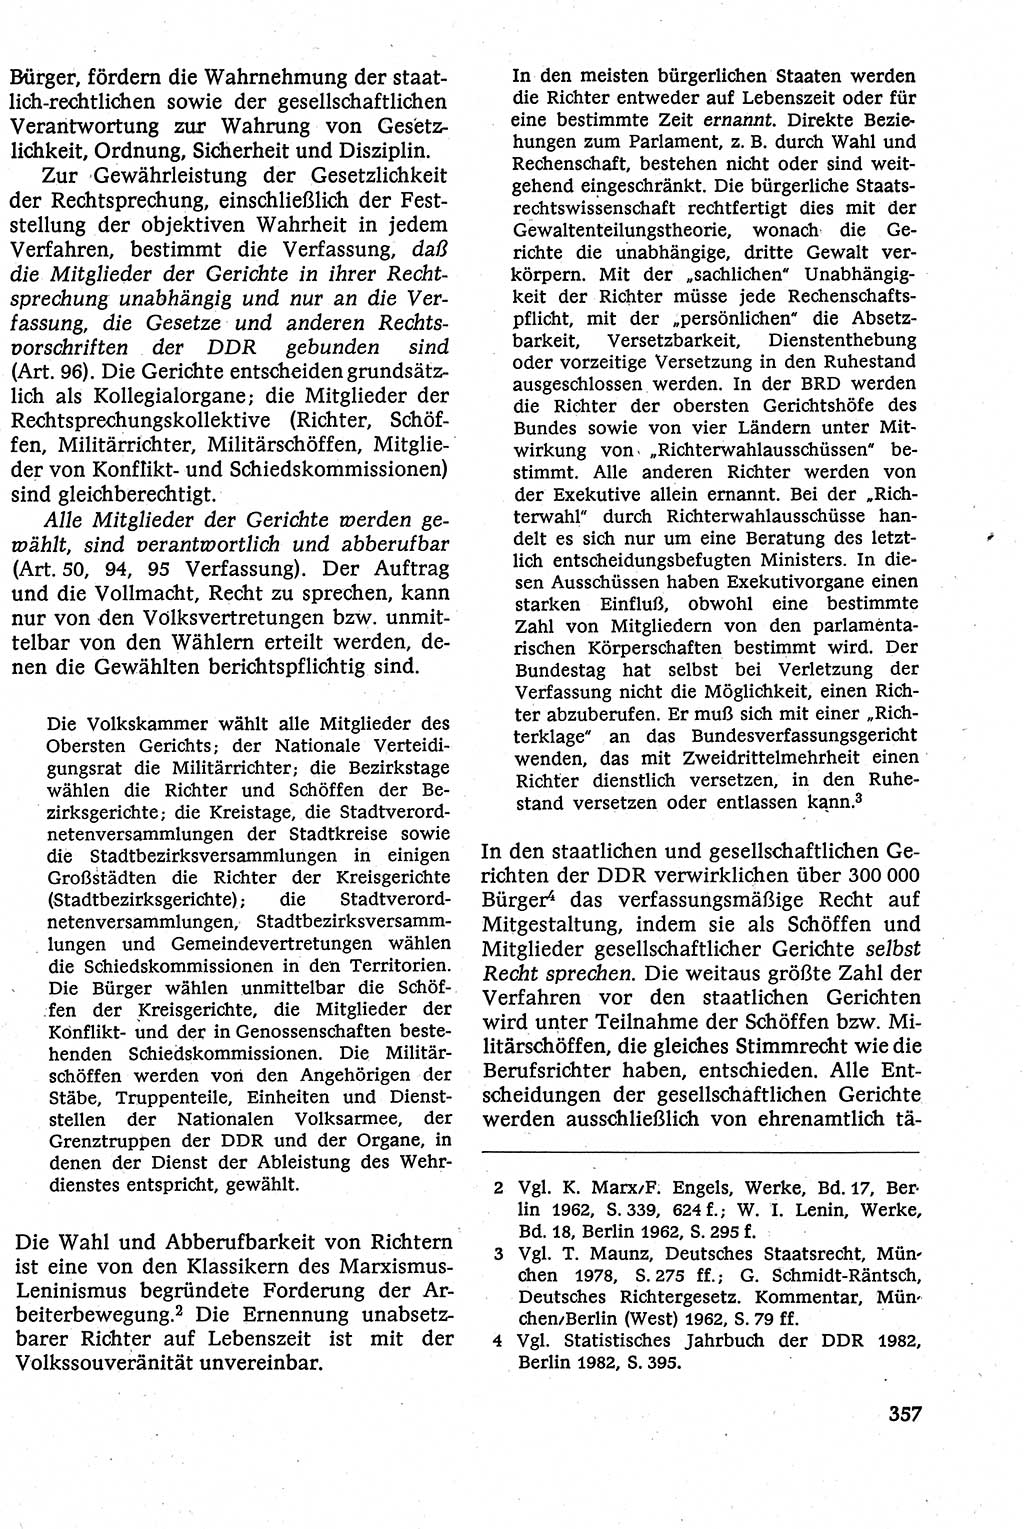 Staatsrecht der DDR [Deutsche Demokratische Republik (DDR)], Lehrbuch 1984, Seite 357 (St.-R. DDR Lb. 1984, S. 357)